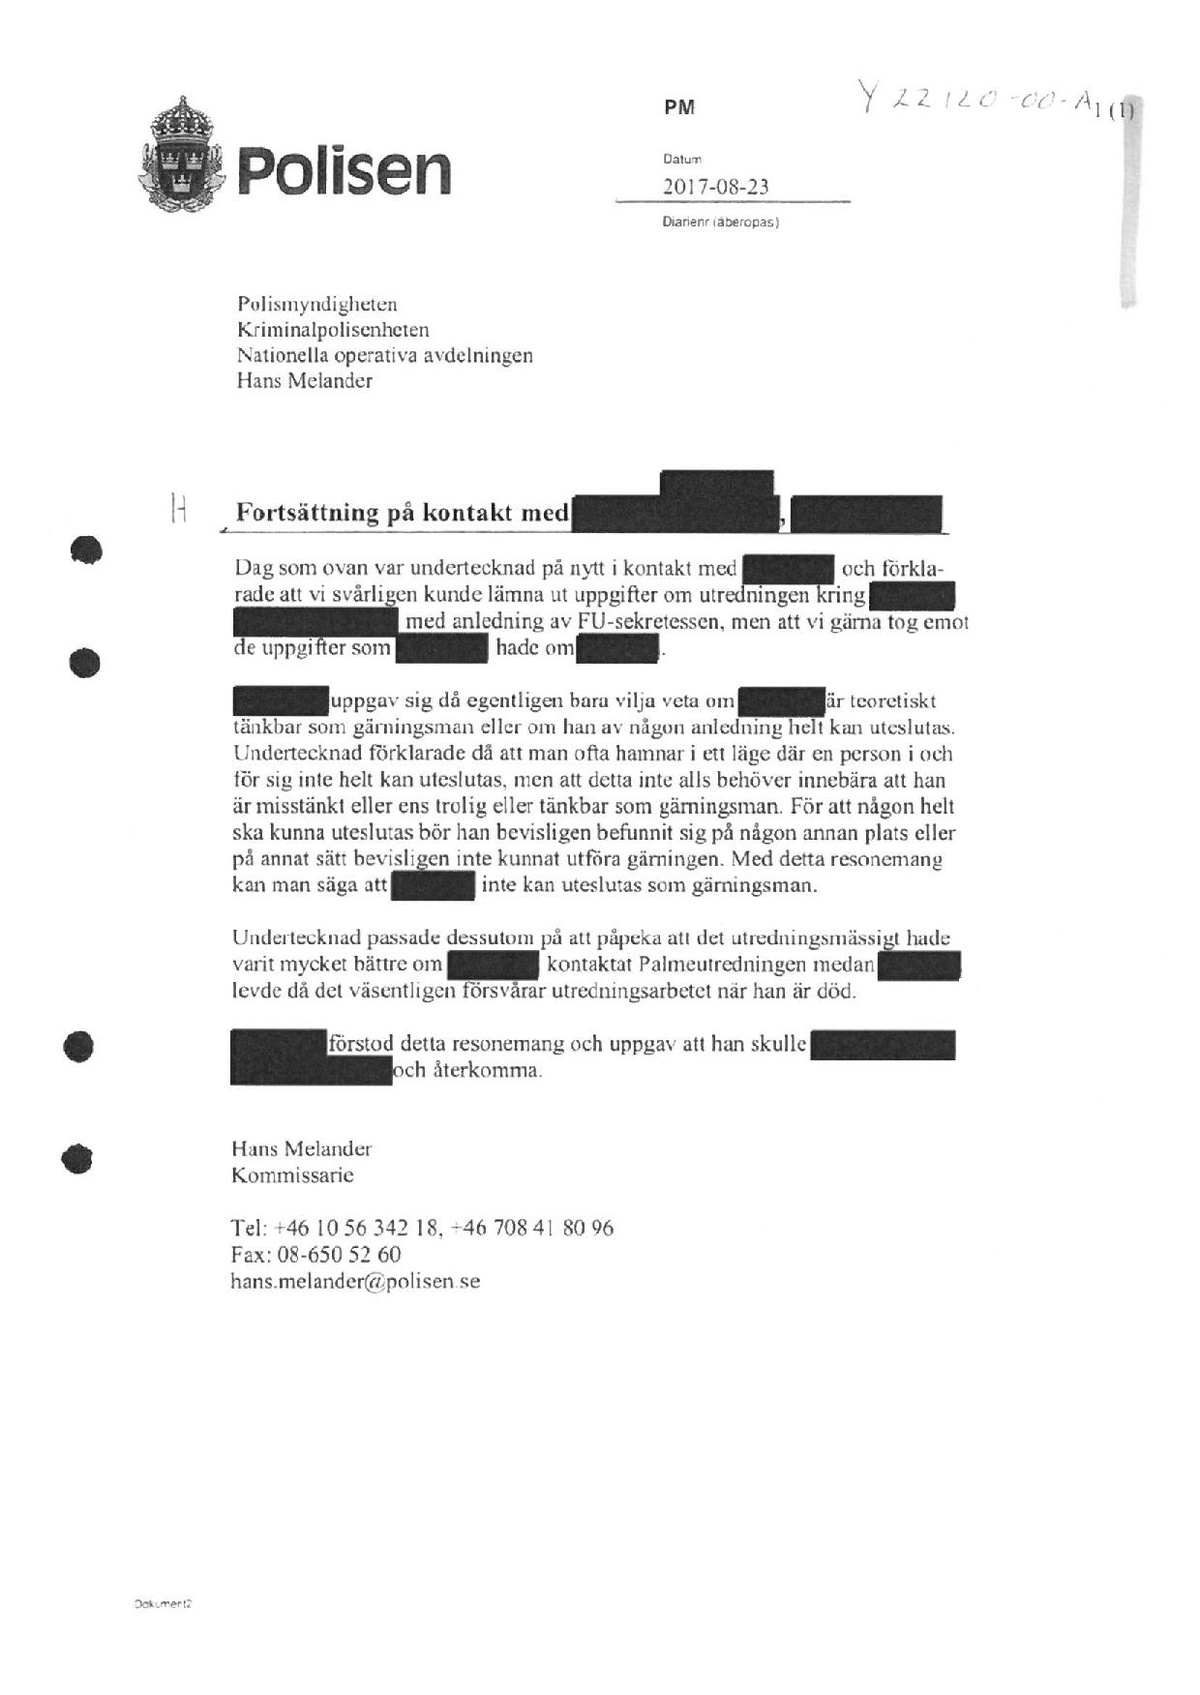 Pol-2017-08-23 Y22120-00 Kontakt med Journalist på Sydsvenskan om att PKKare (i.e. Erdogan Sarikaya) erkänt delaktighet i Palmemordet innan sin död sida 2.pdf